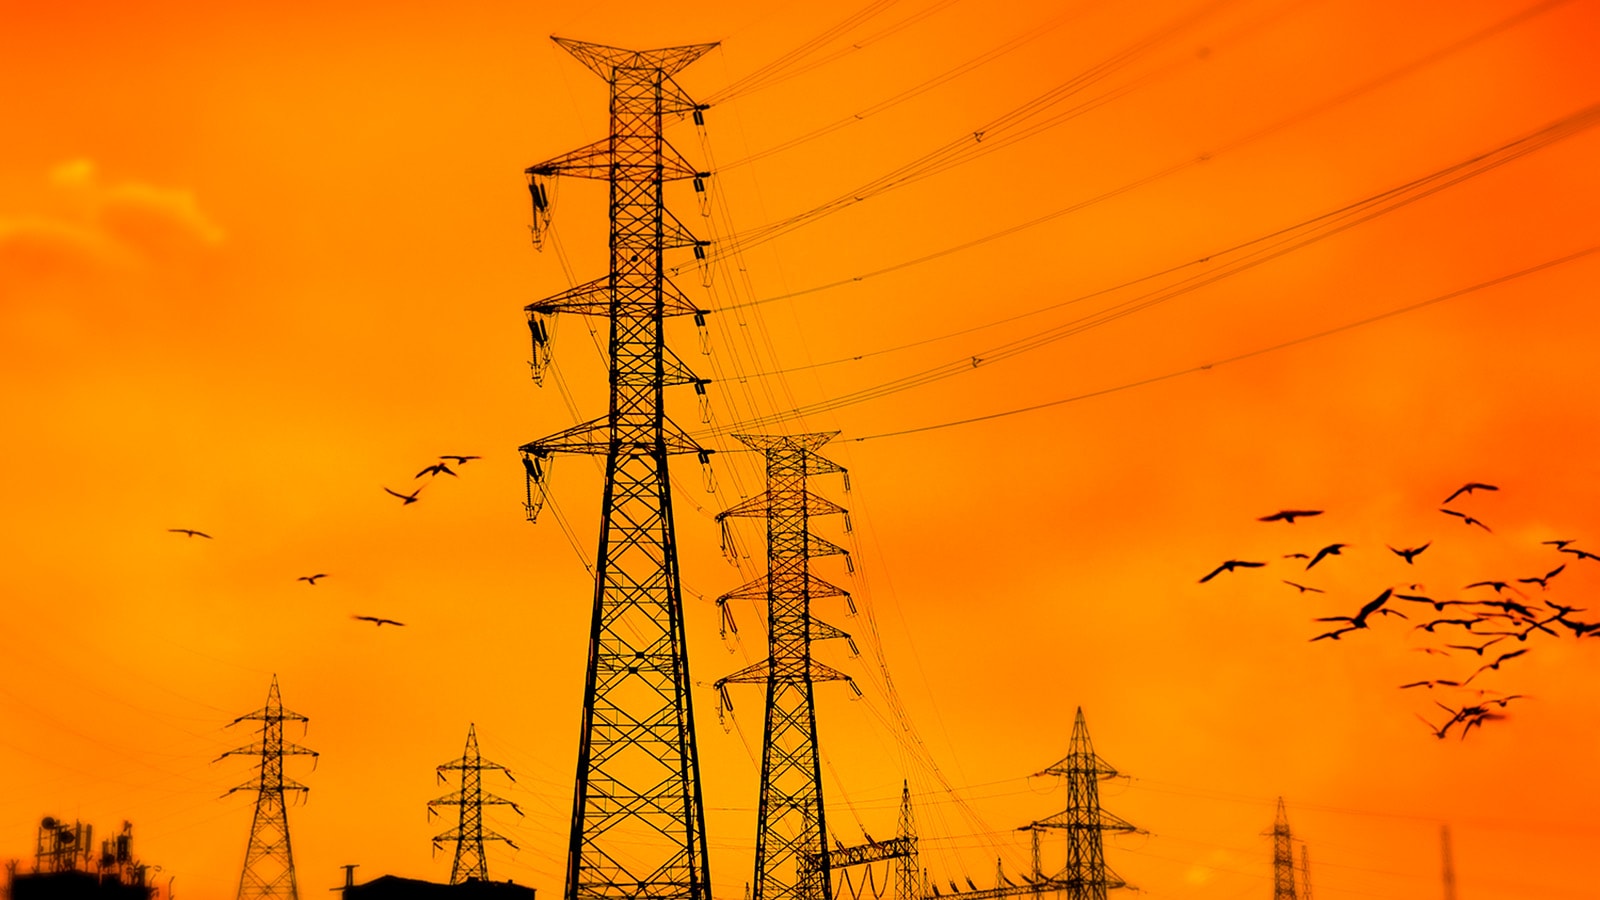 Las redes eléctricas como piedra angular de la transición energética y la industrialización